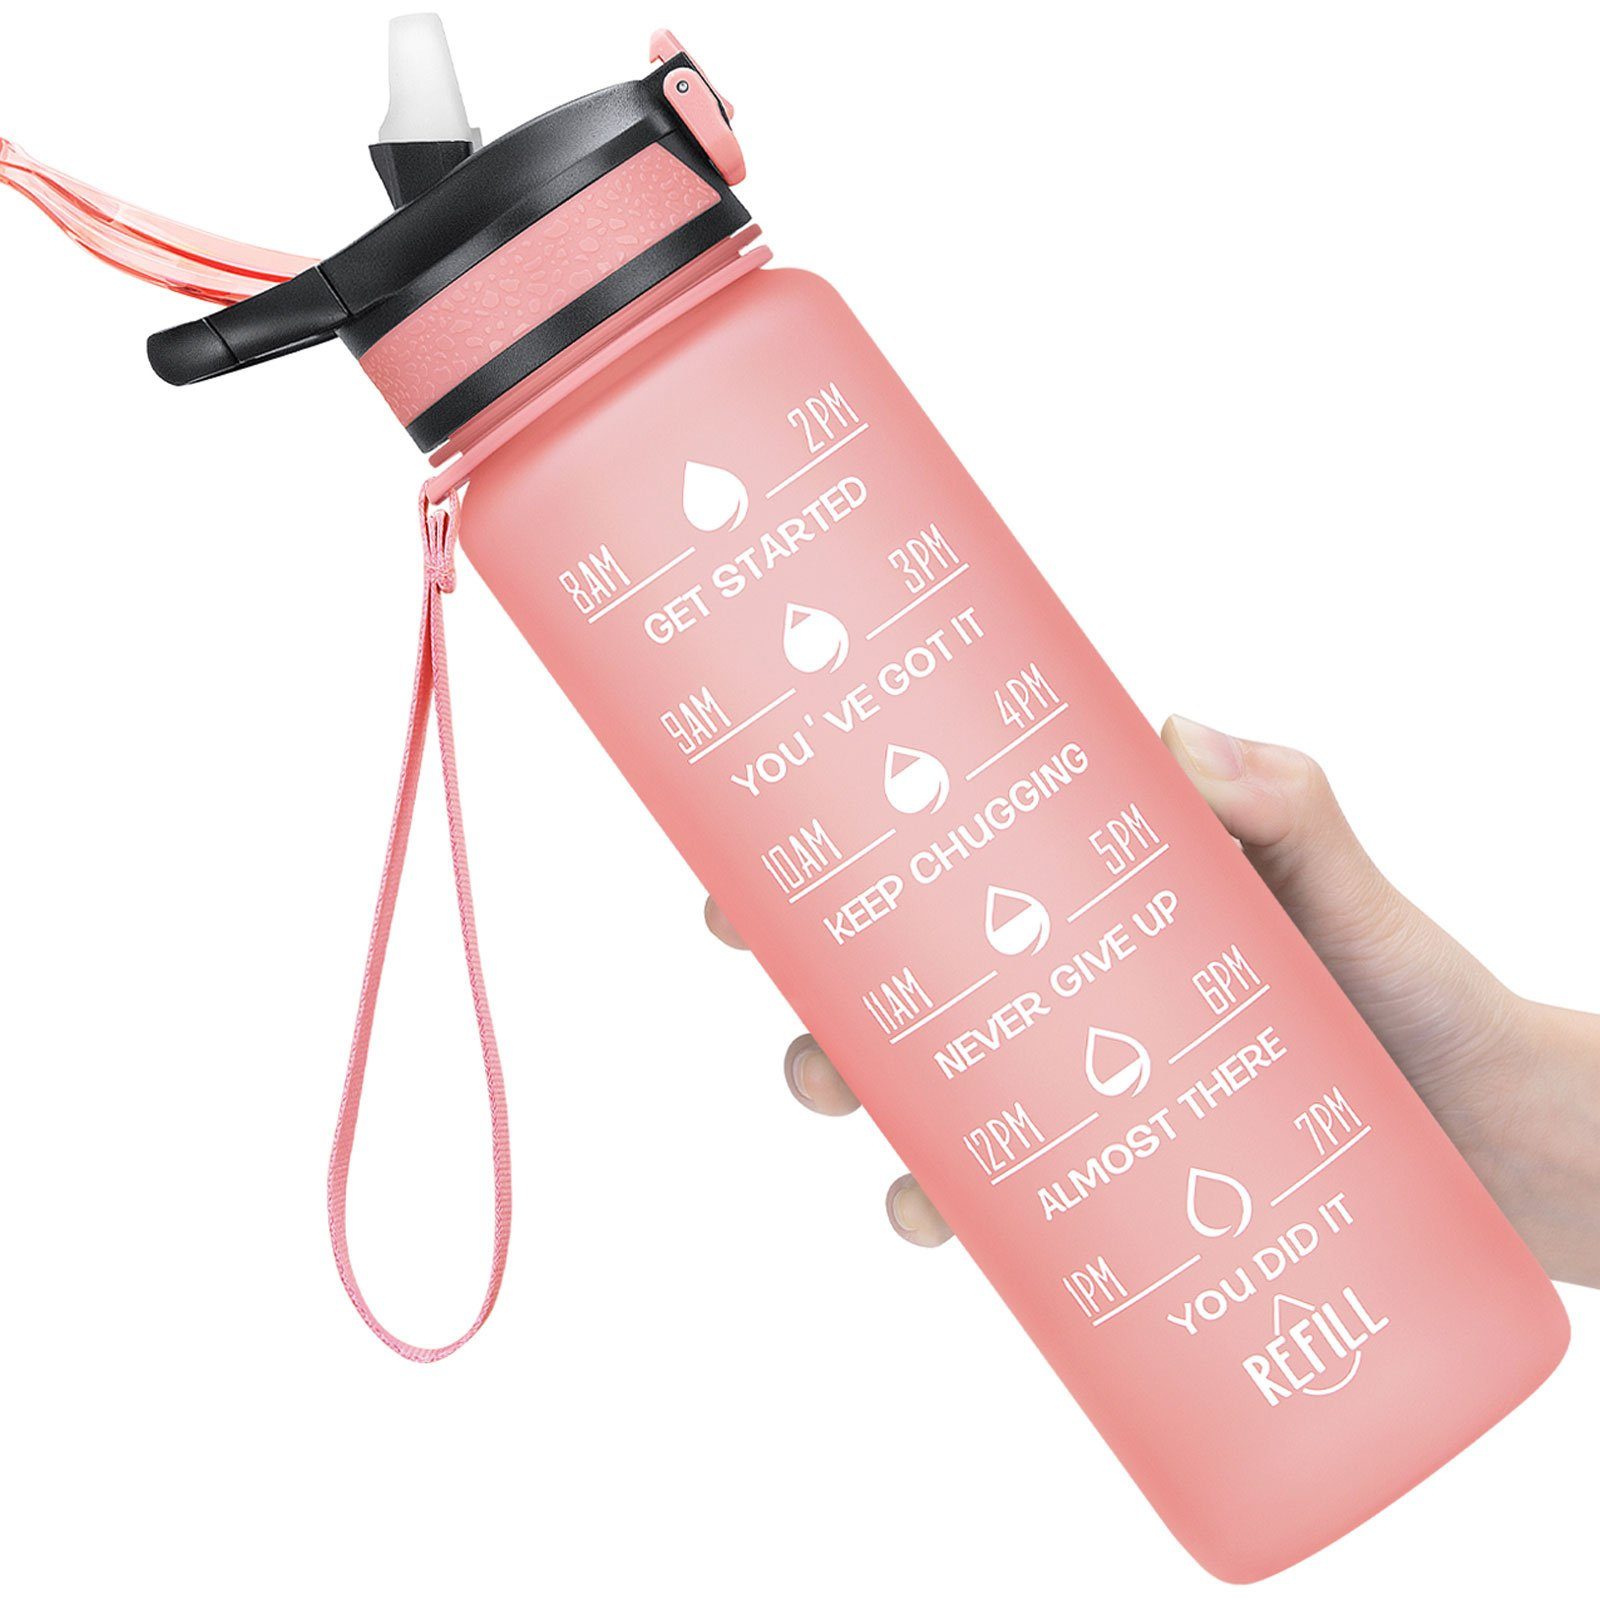 WISHDOR Trinkflasche Sport Wasserflasche Sportflasche BPA-Frei Wandern Strohhalm Liter Pink Auslaufsicher und Outdoor 1 1L, Zeitmarkierung Fahrrad Fitness Camping